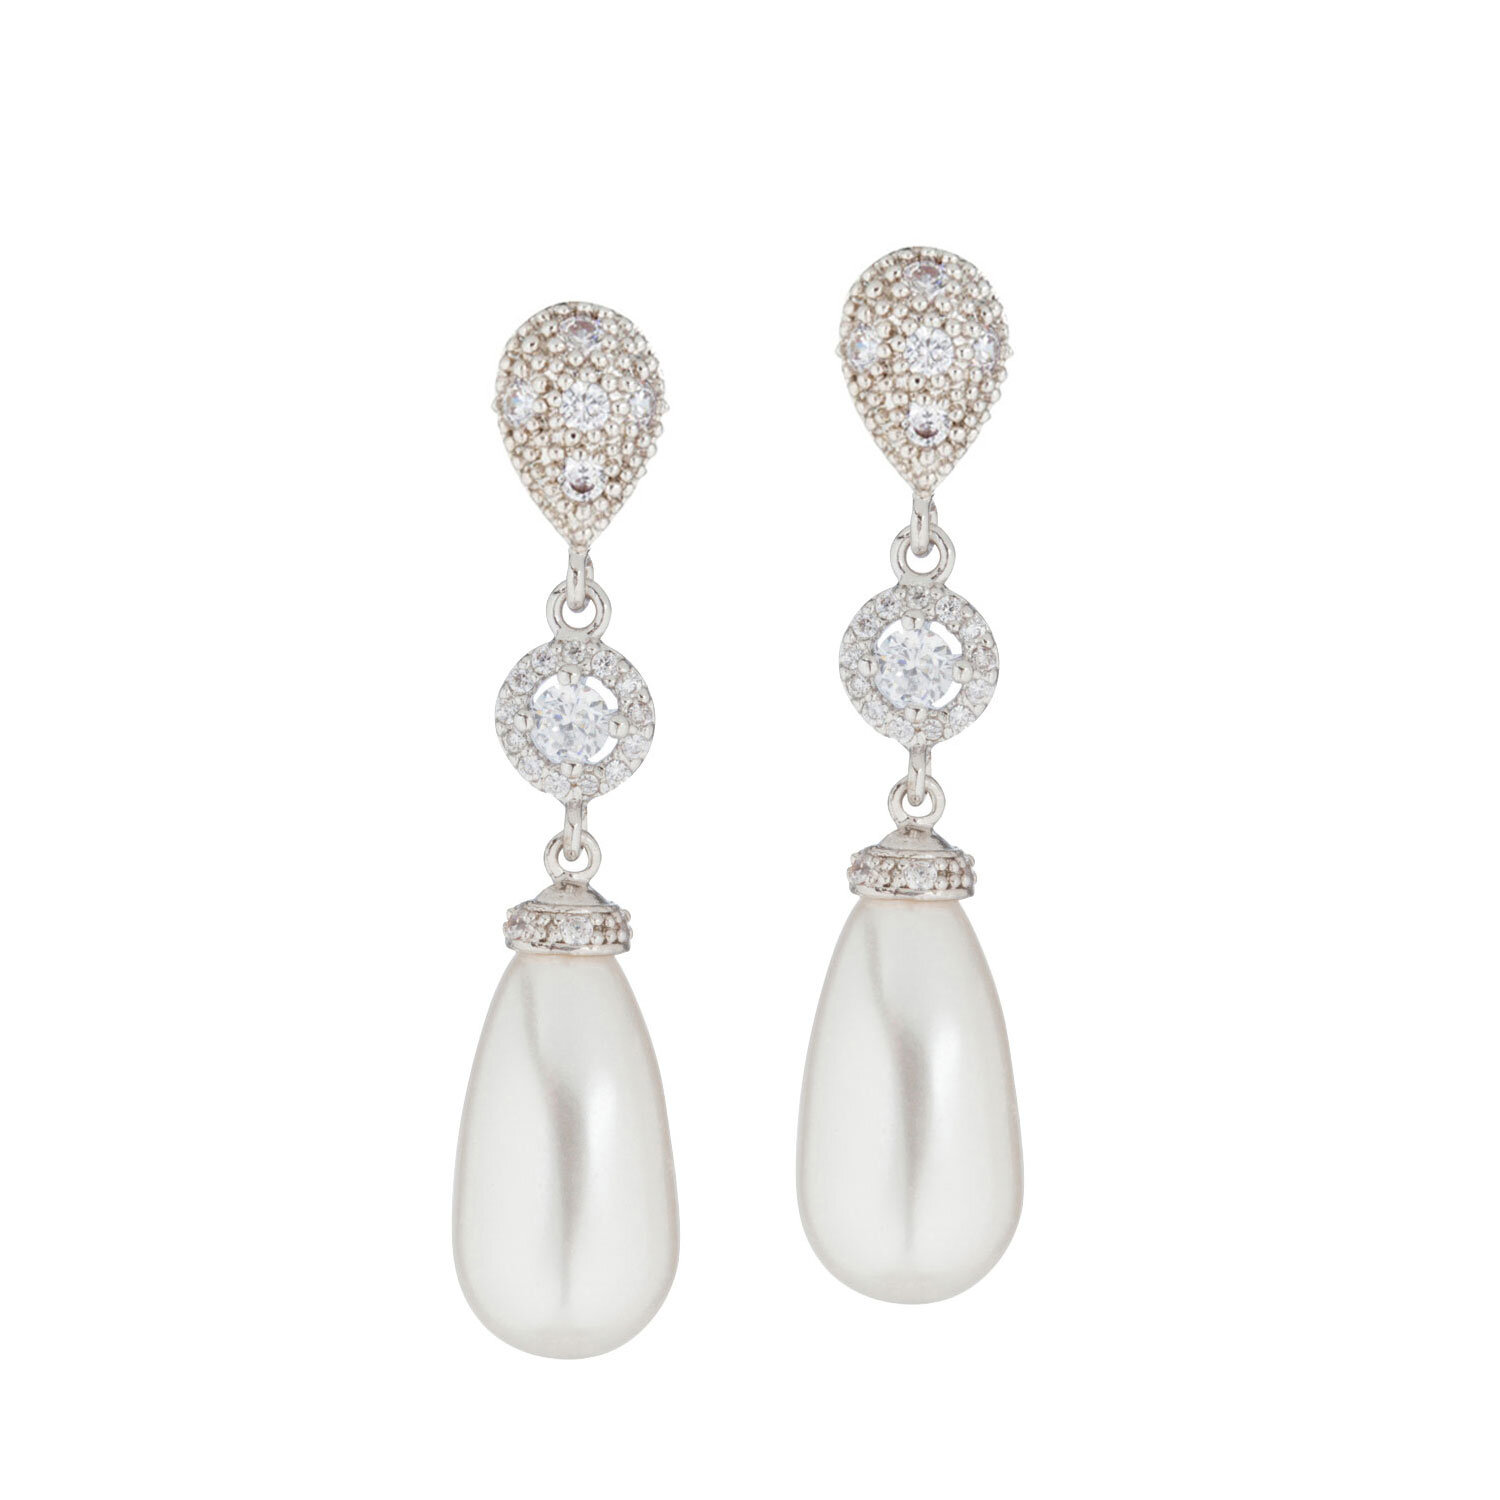 White Pearl Silver Plated Dangle Earrings Bridal UK Seller